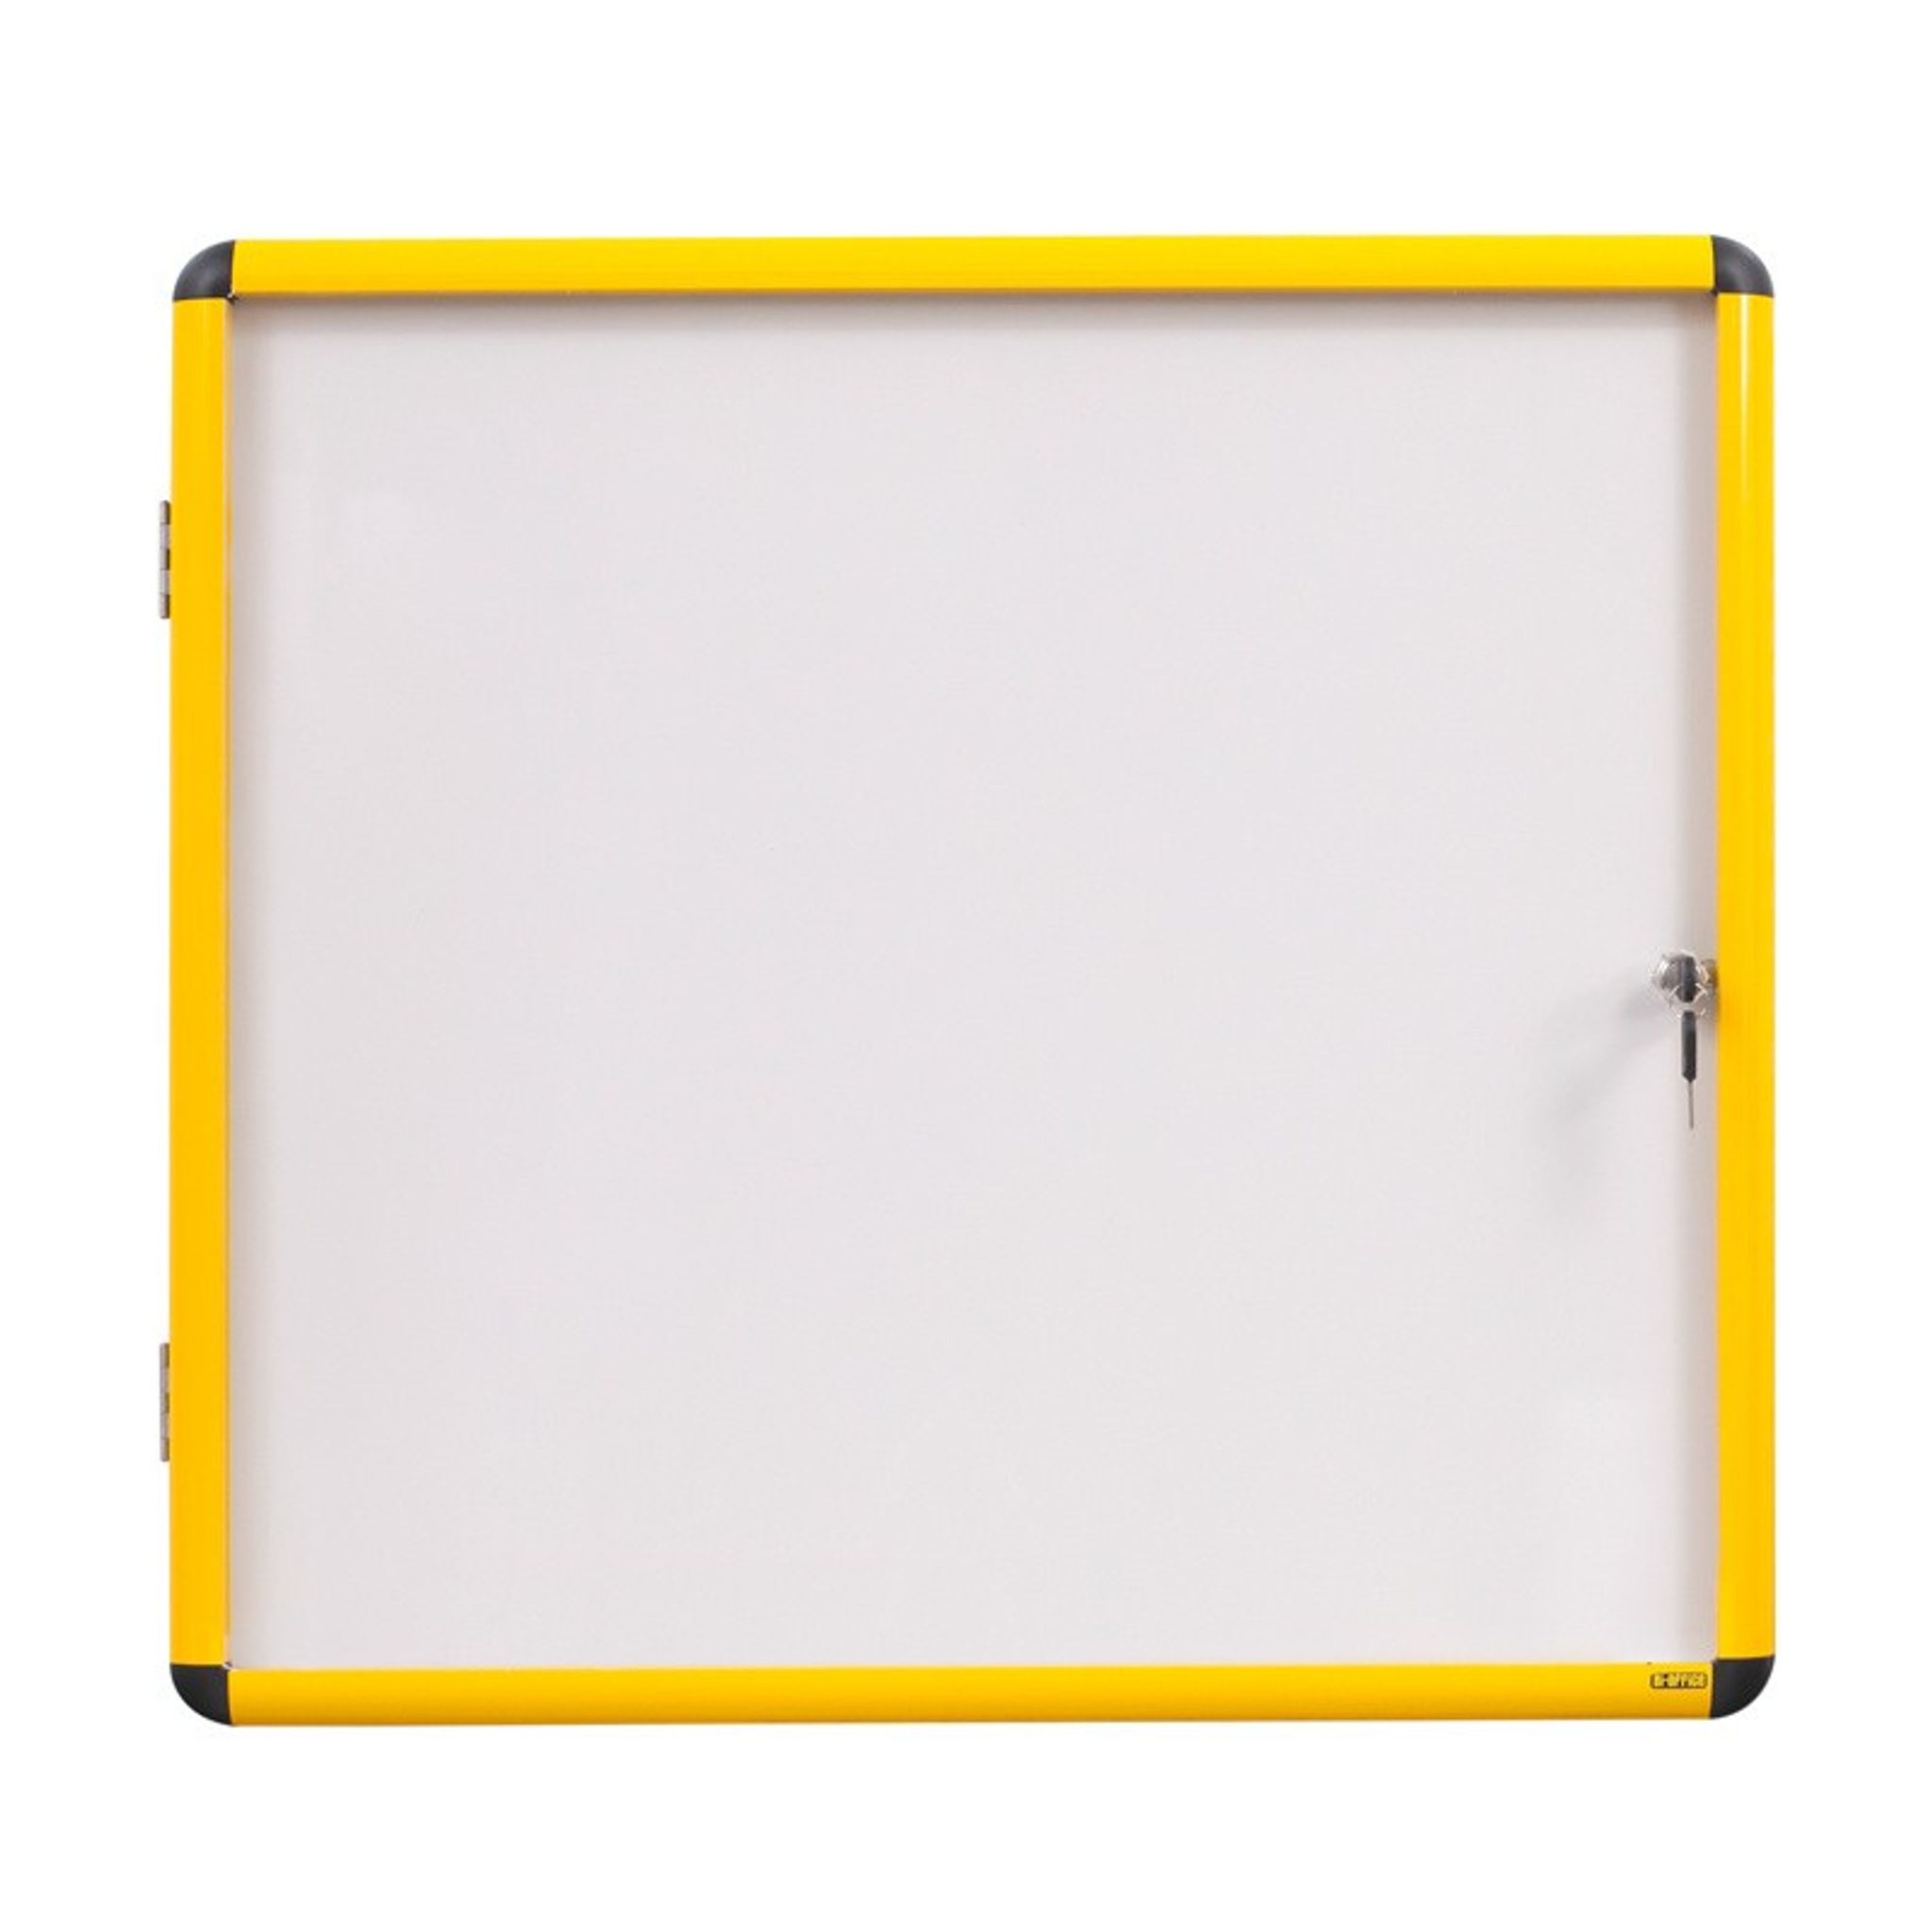 Gablota wewnętrzna z białą powierzchnią magnetyczną, żółta ramka, 720 x 674 mm (6xA4)